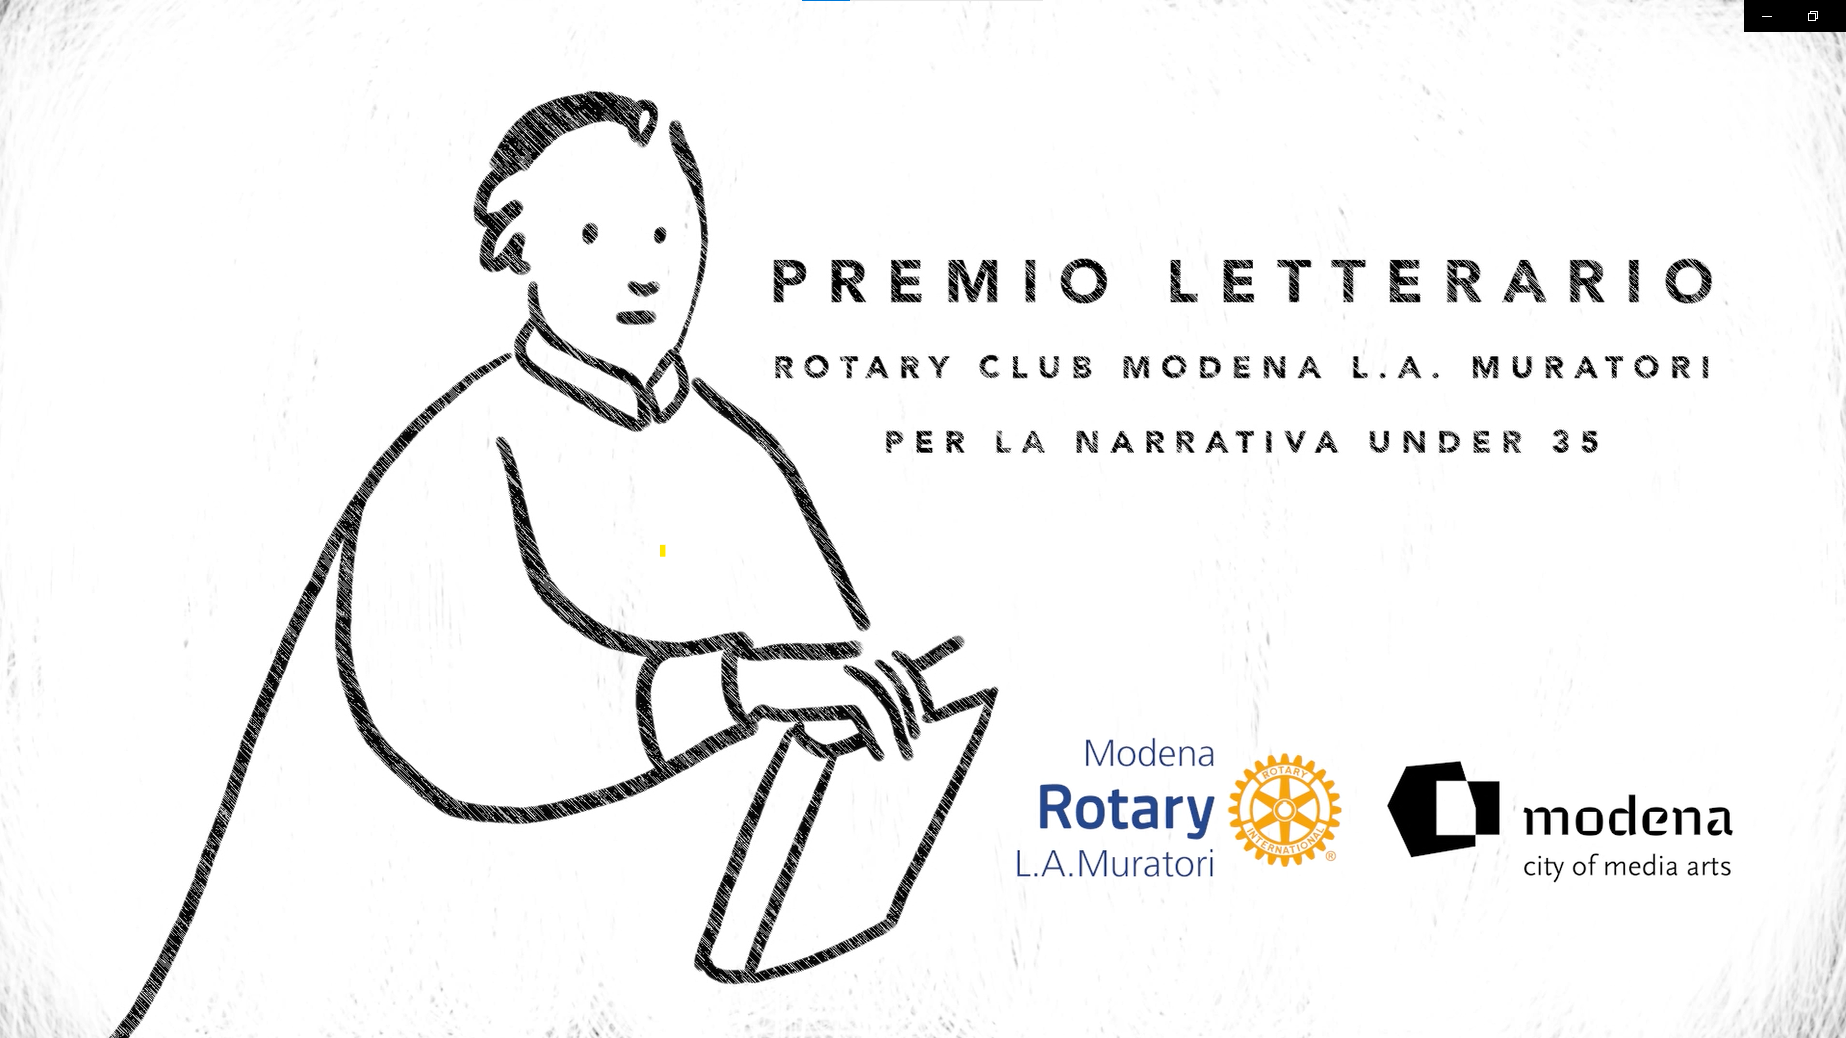 Premio Letterario Rotary Club Modena L.A. Muratori per la Narrativa Under 35